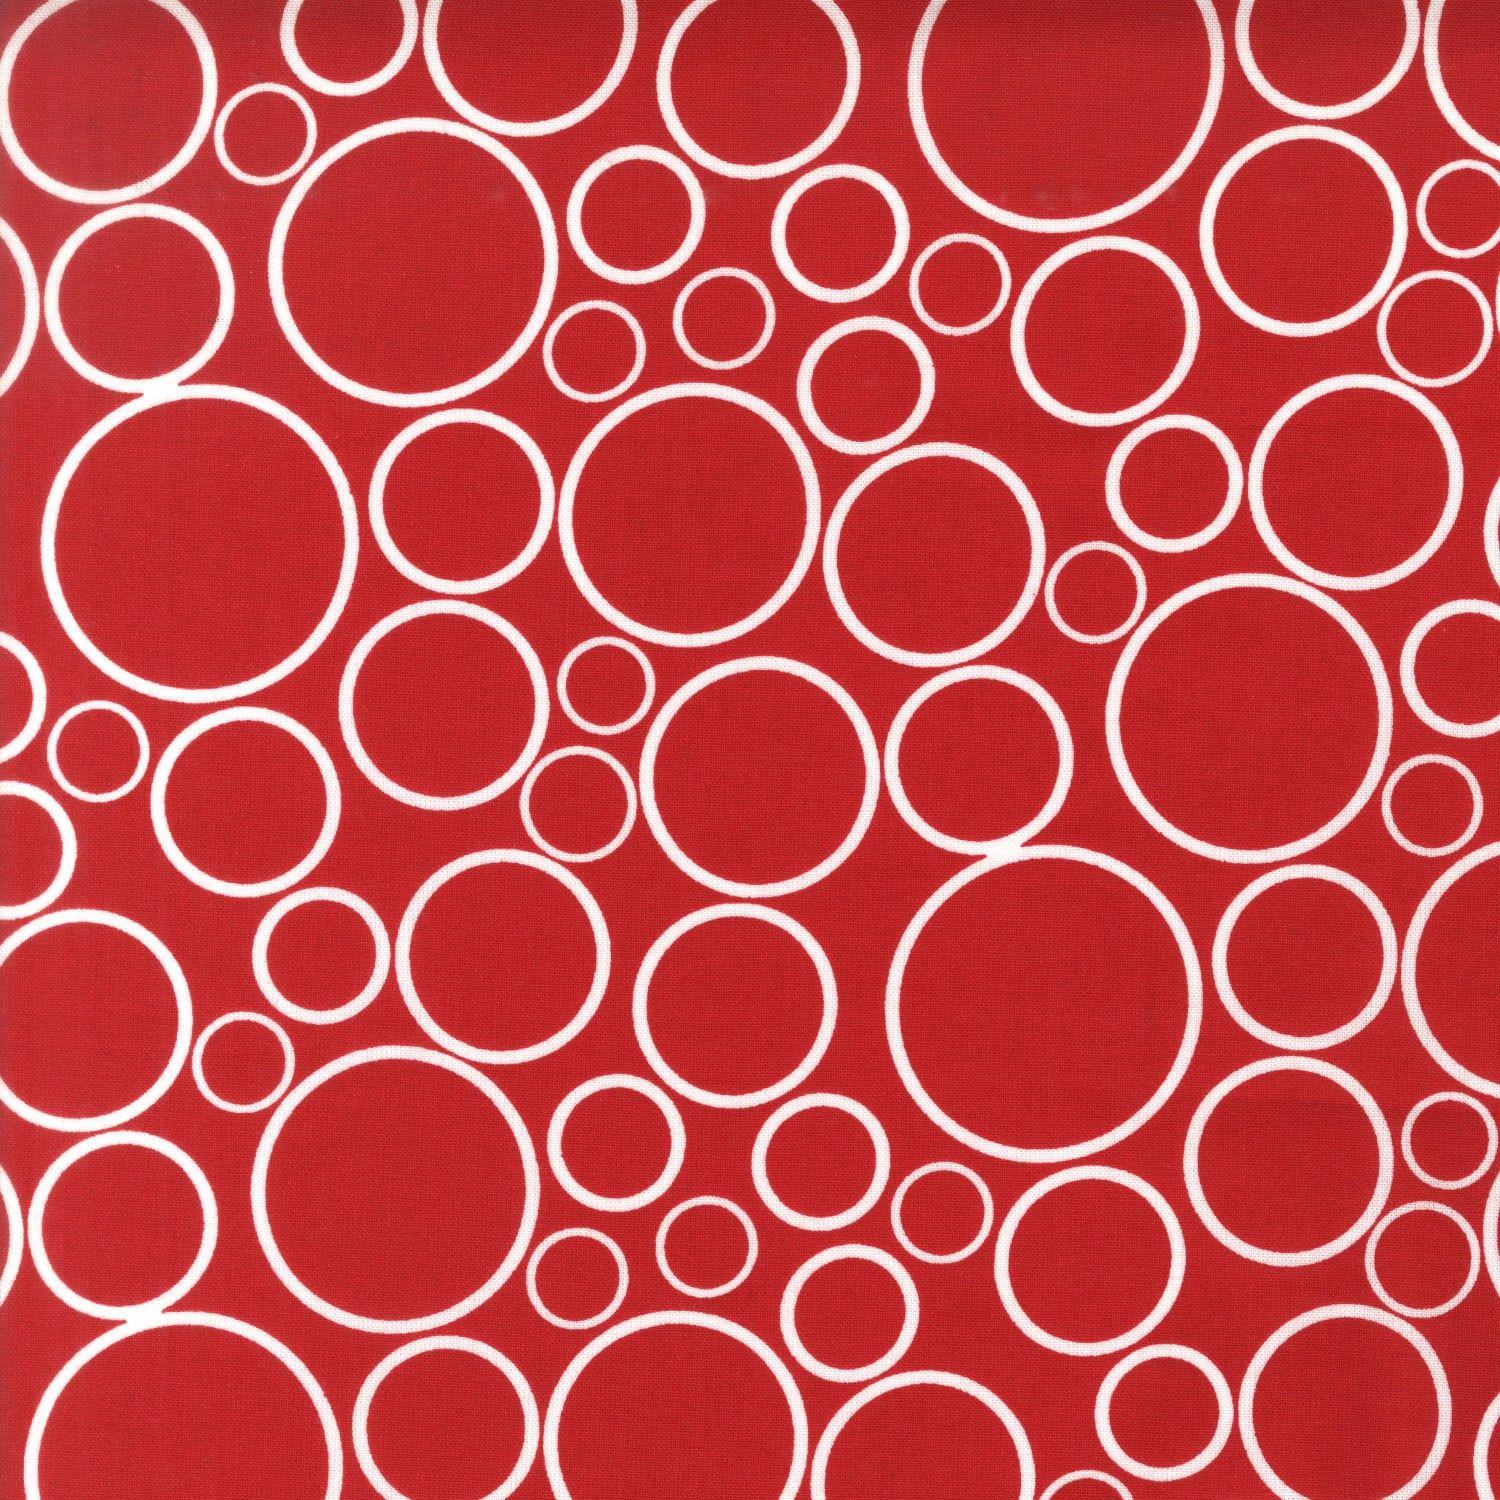 3 Red Circles Logo - Robert Kaufman 108